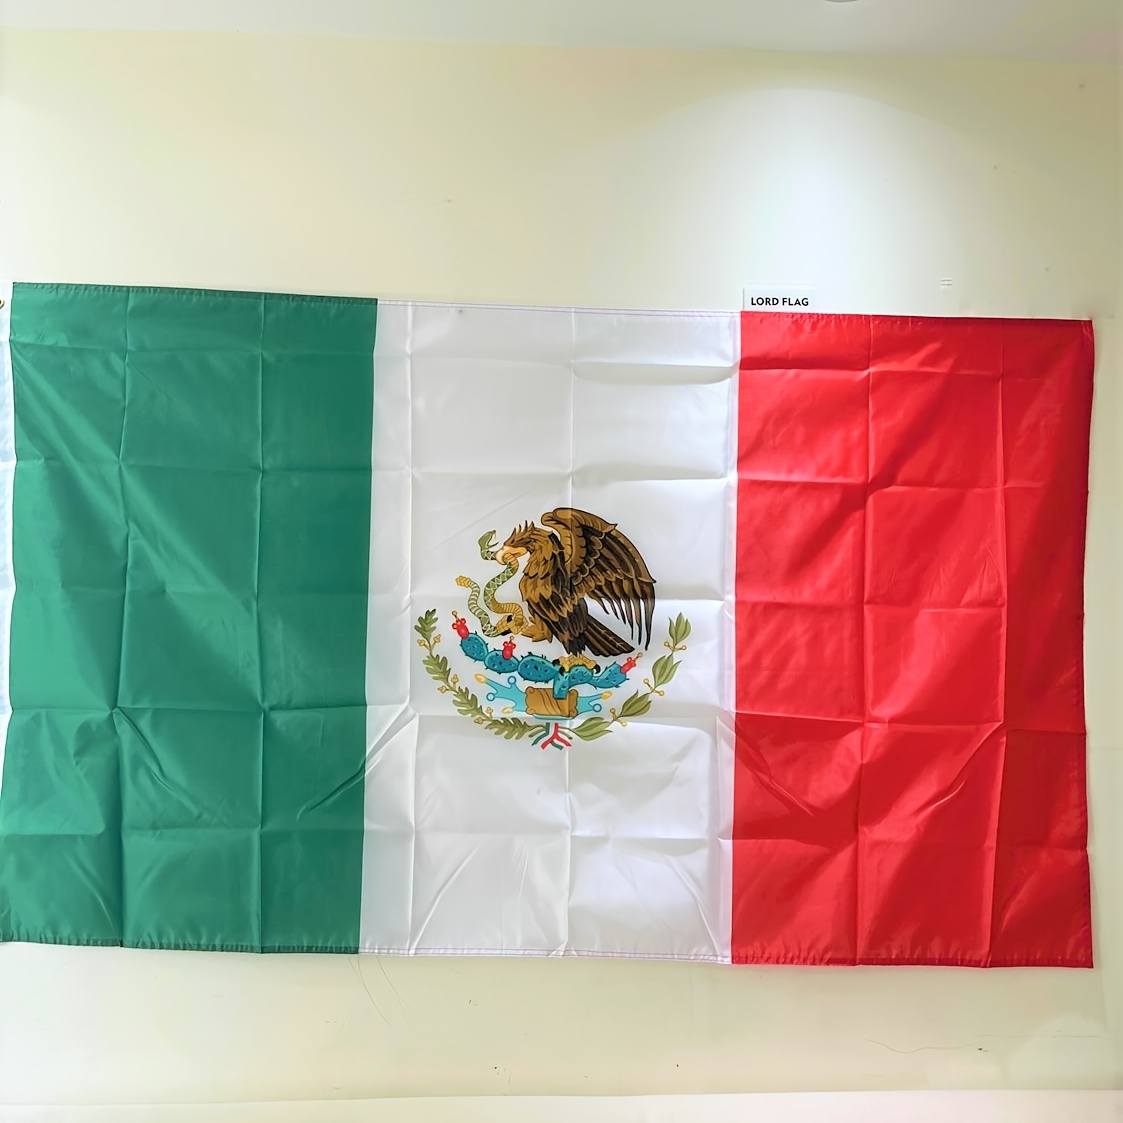 mexico national flag